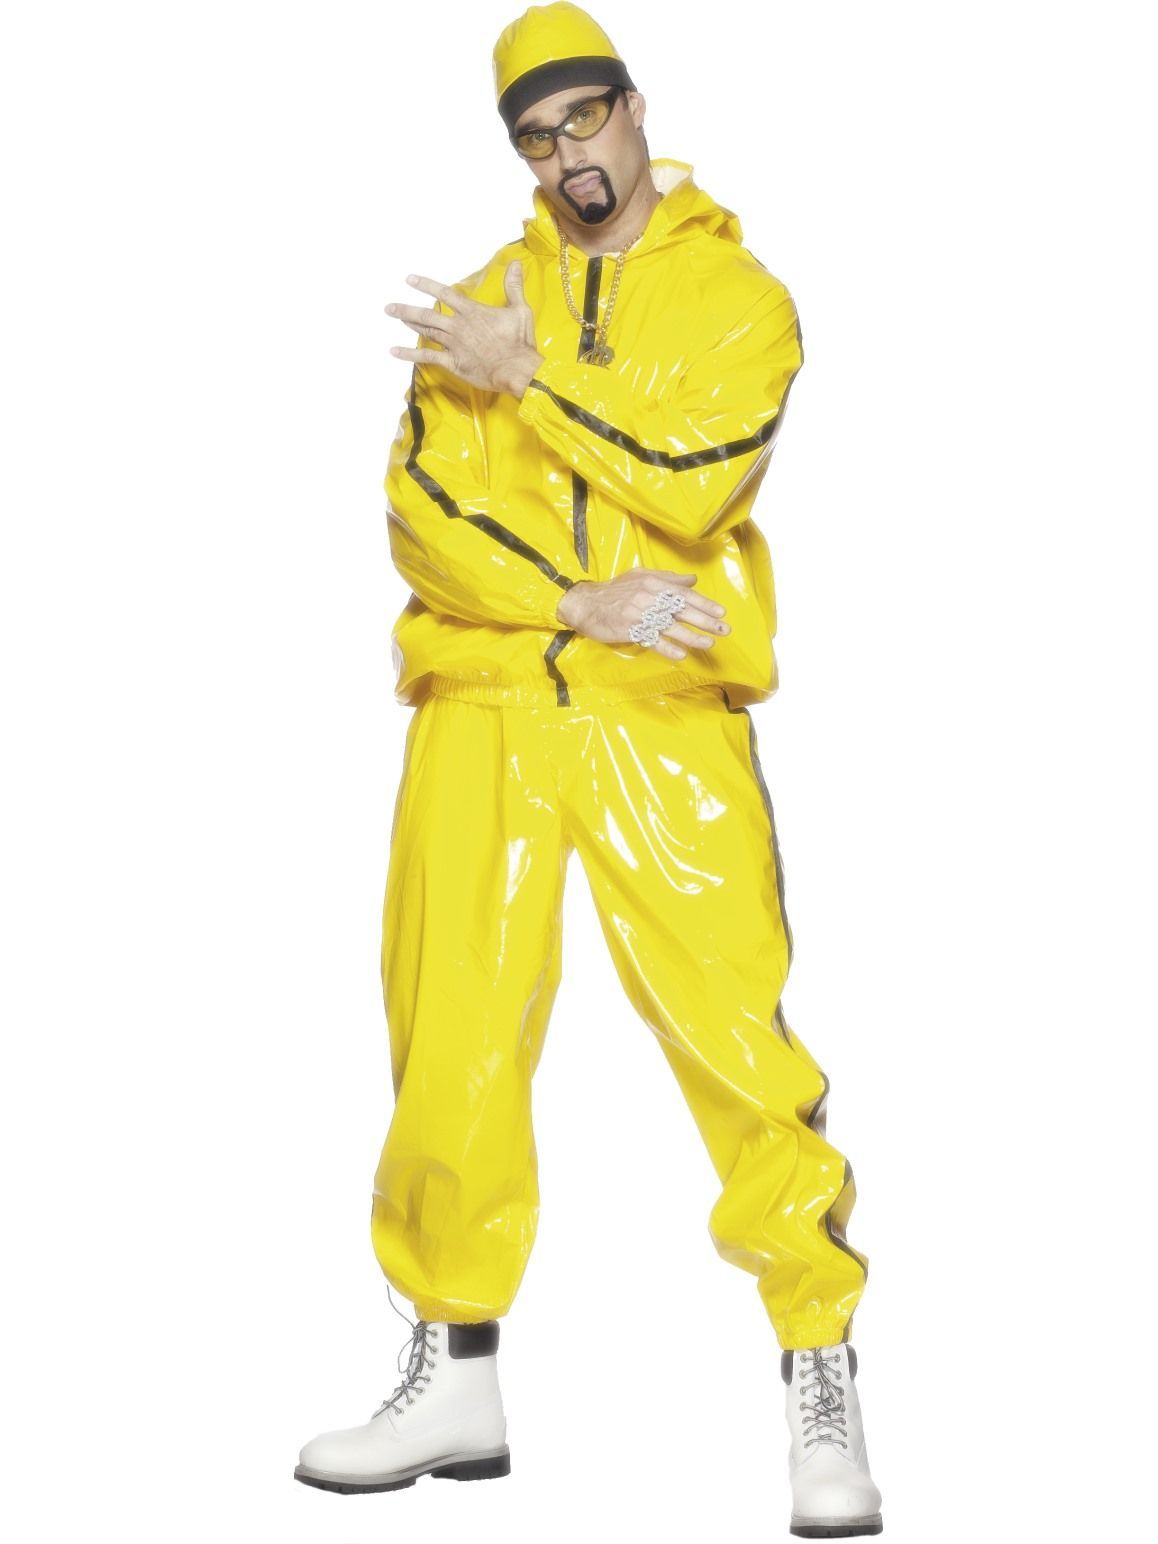 Costume Adult Yellow Rapper Suit 1990s Hip Hop/Rap Large